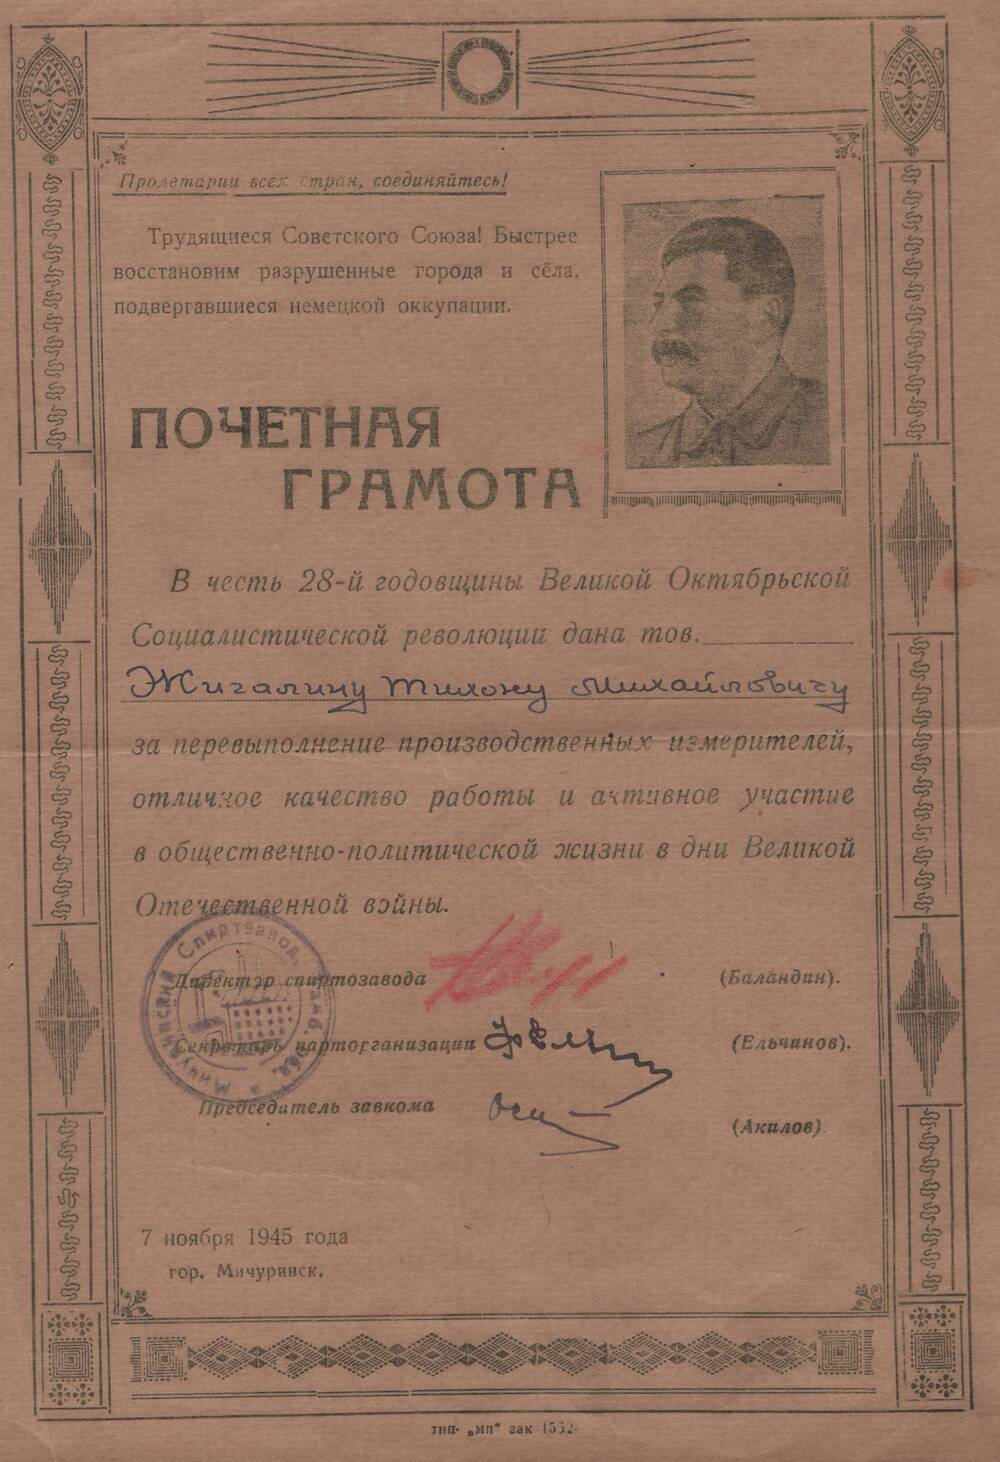 Почетная грамота, врученная Жигалину Тихону Михайловичу, за перевыполнение производственных измерителей